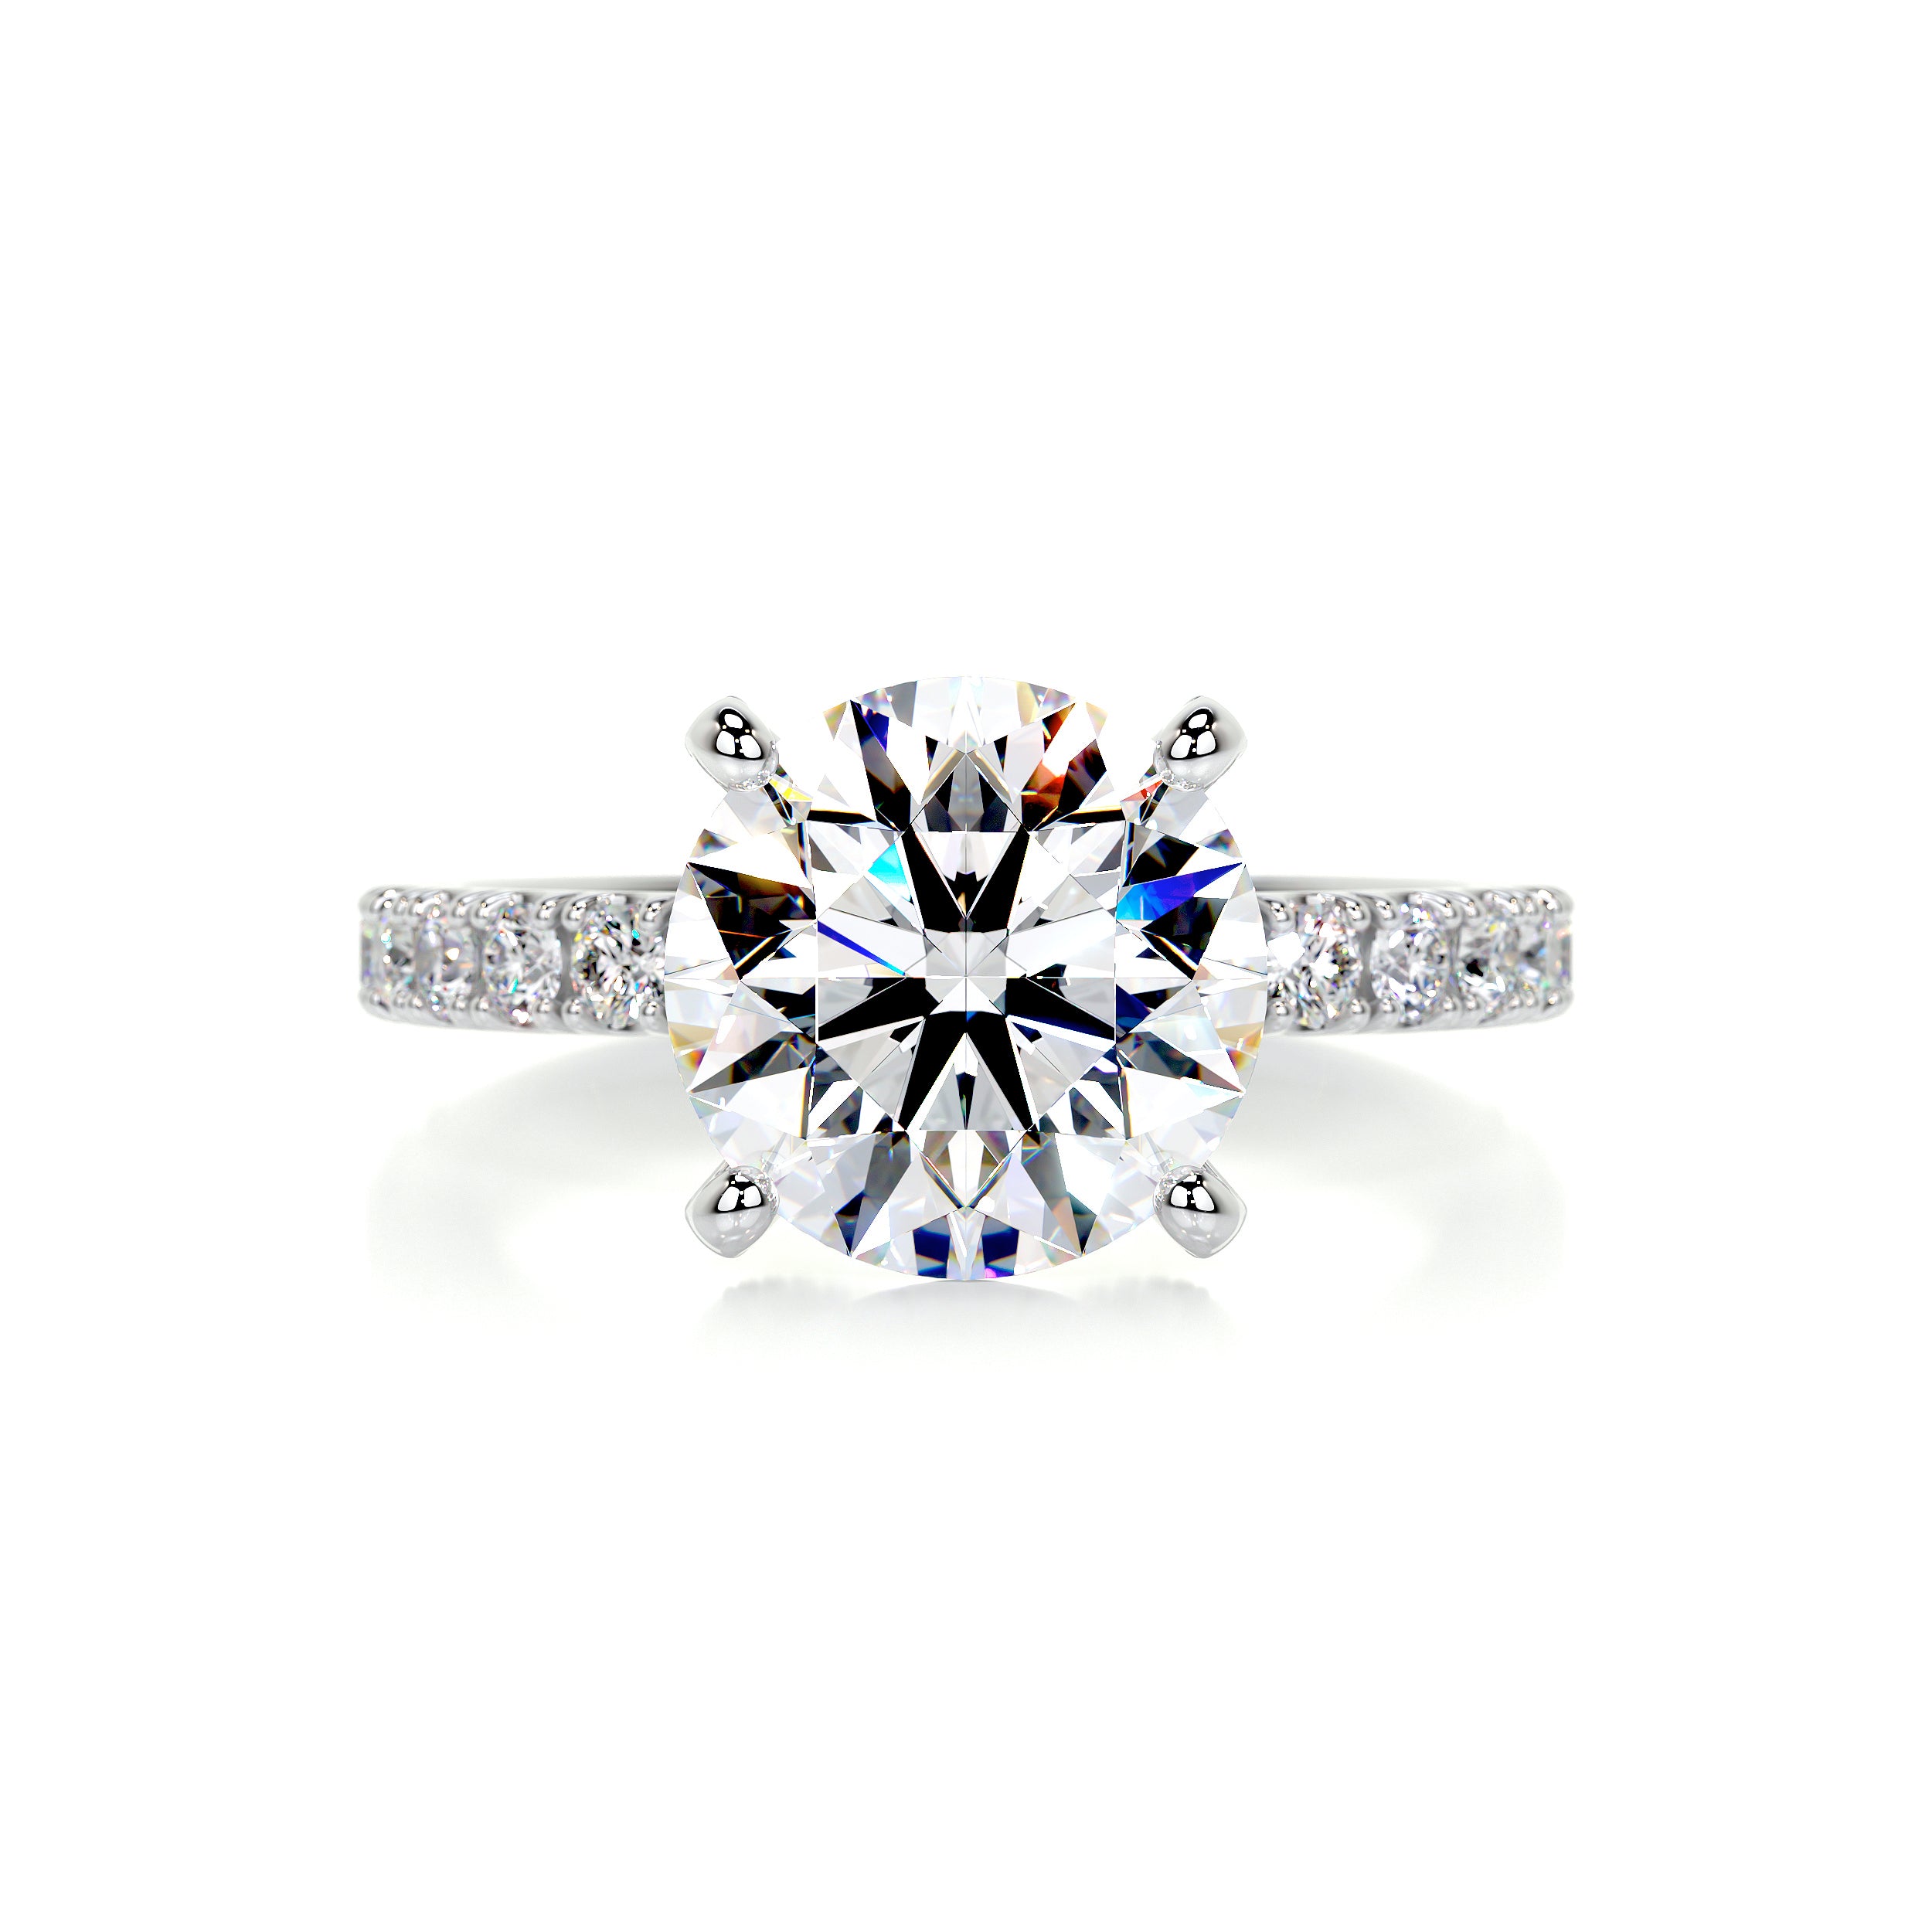 Alison Moissanite & Diamonds Ring   (3.75 Carat) -Platinum